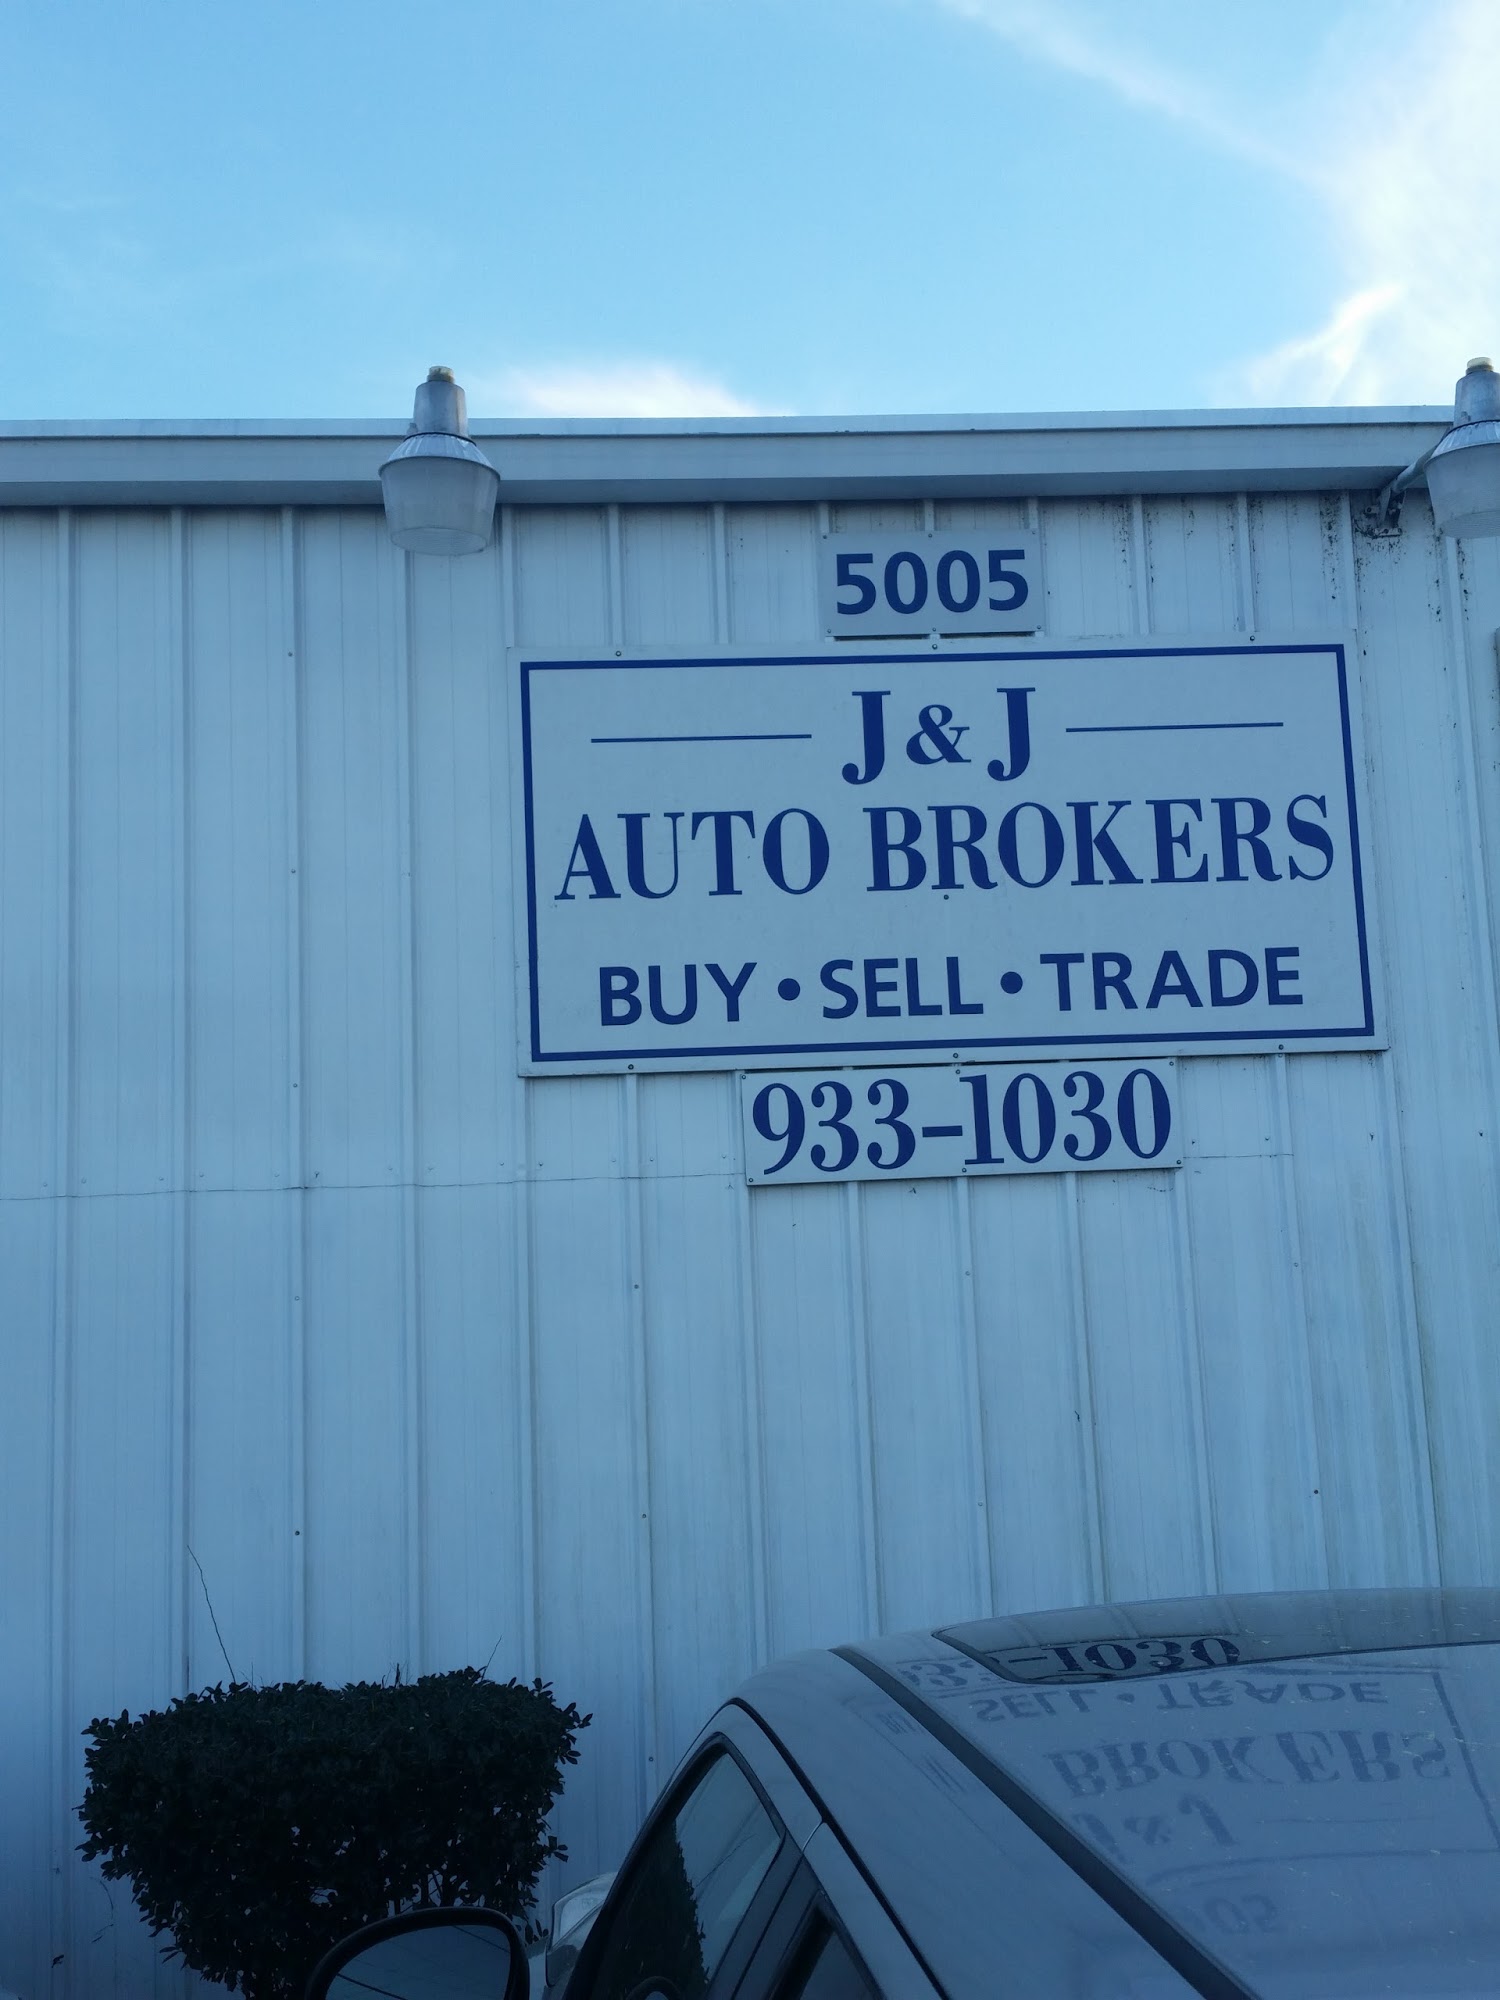 J & J Auto Brokers